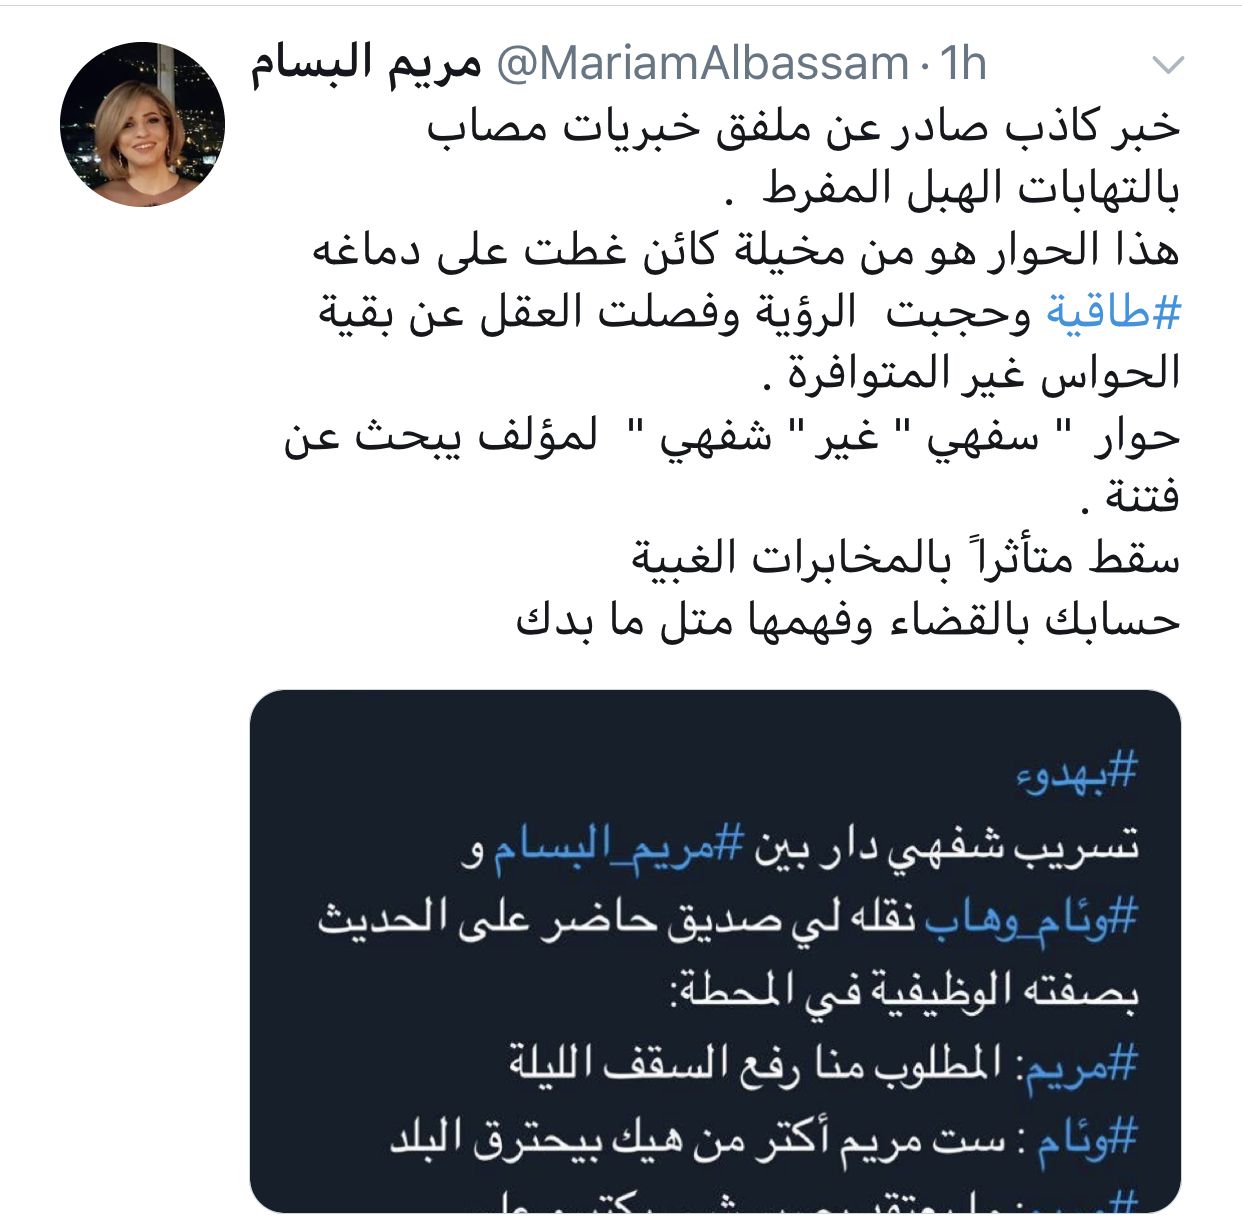 رد مريم البسام على خبر كاذب